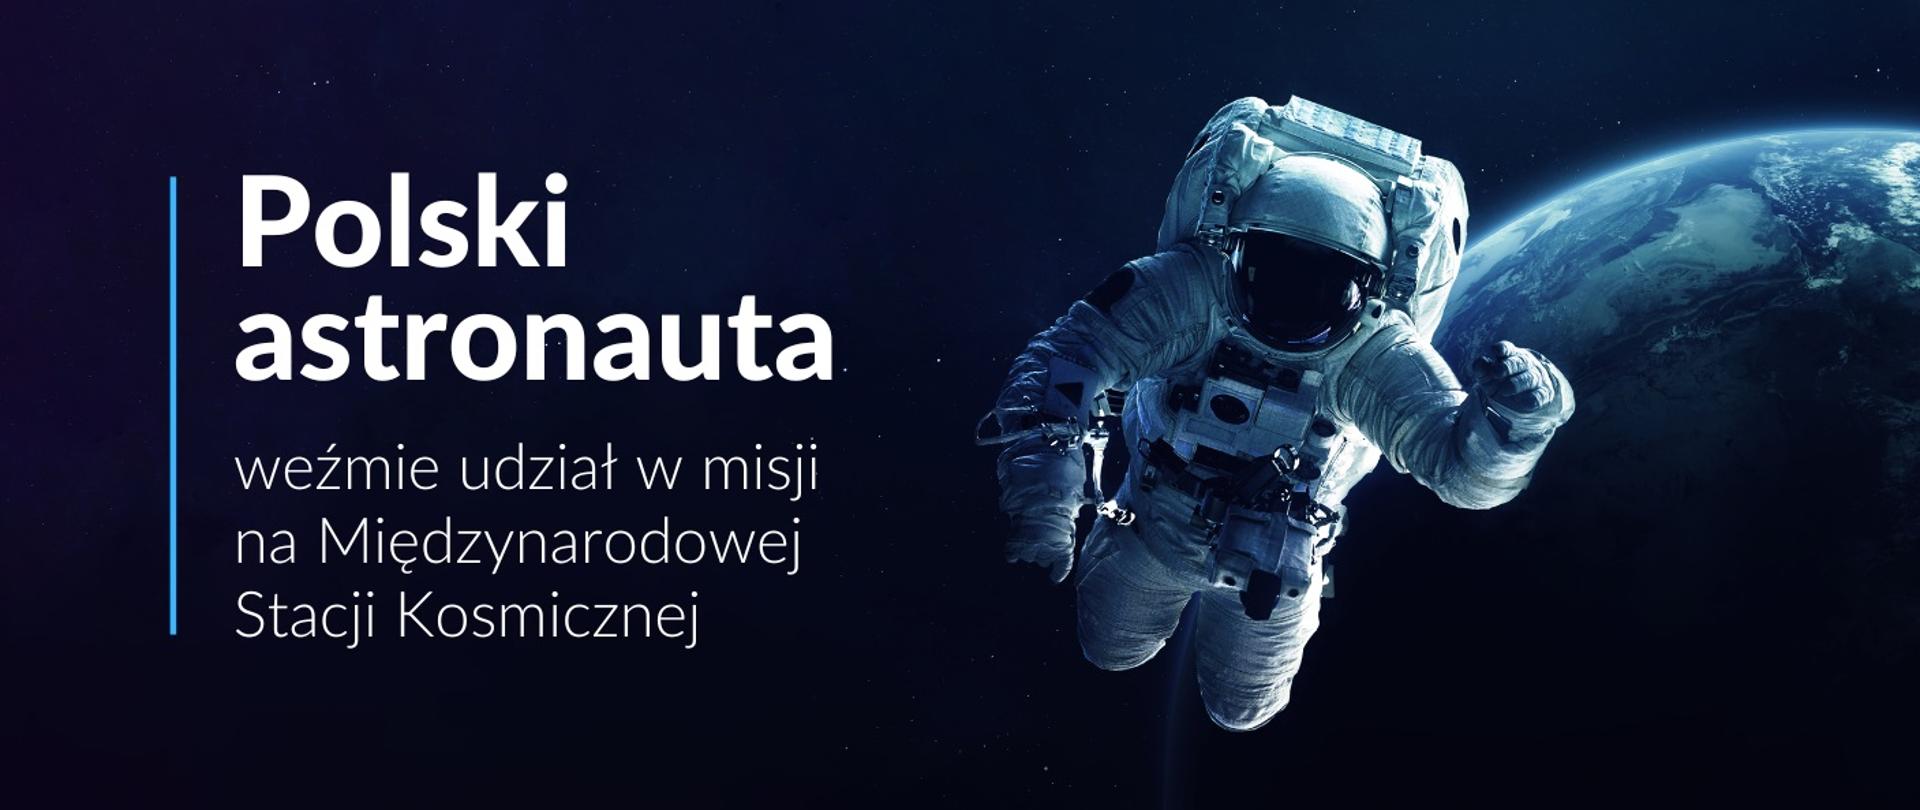 Zdjęcie astronauty na tle Ziemi, obok napis Polski astronauta weźmie udział w misji na Międzynarodowej Stacji Kosmicznej.